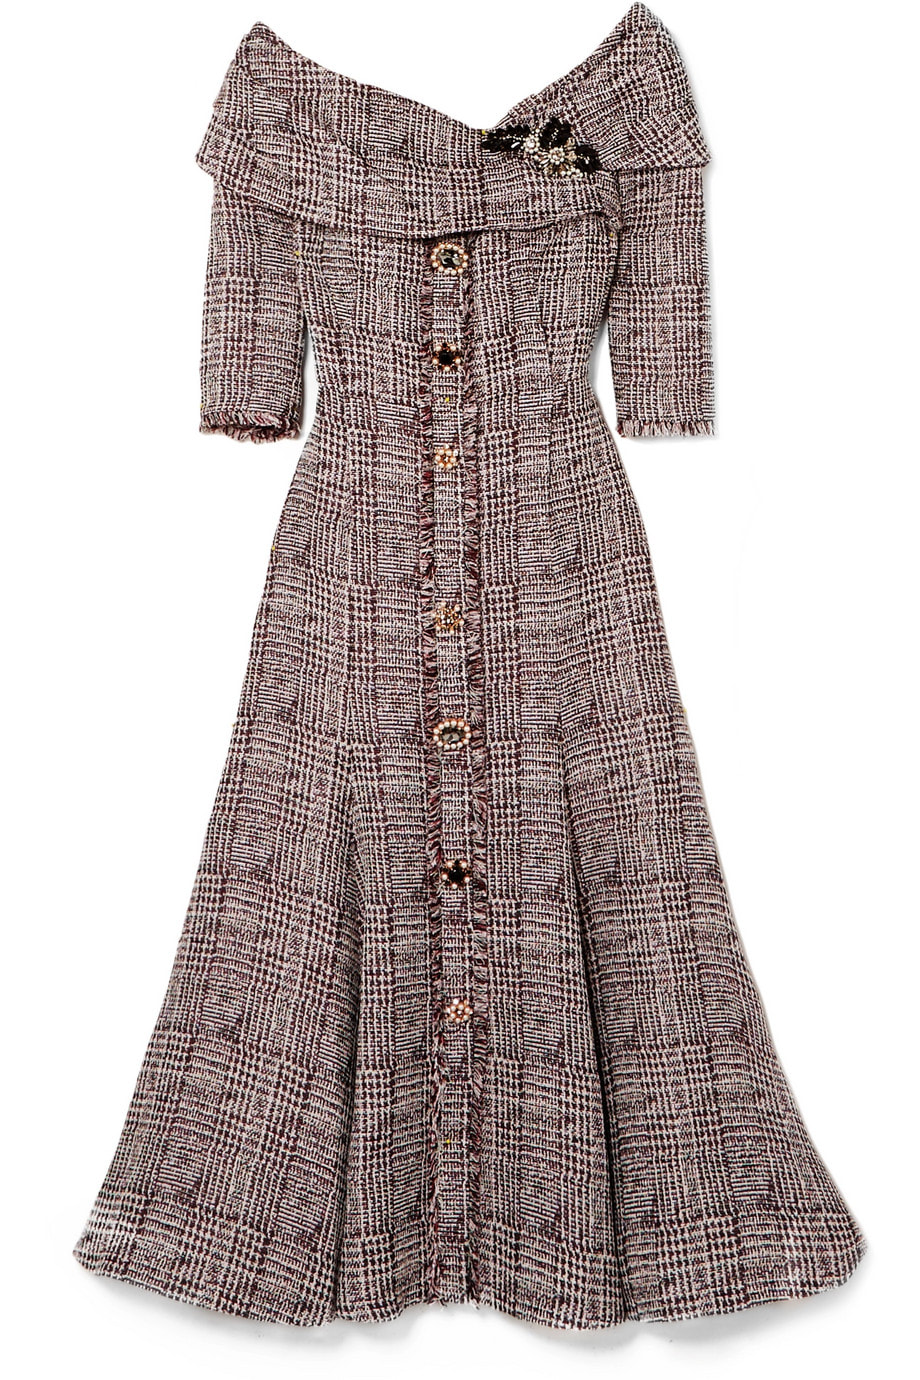 Erdem ‘Iman’ off-the-shoulder embellished bouclé-tweed midi dress